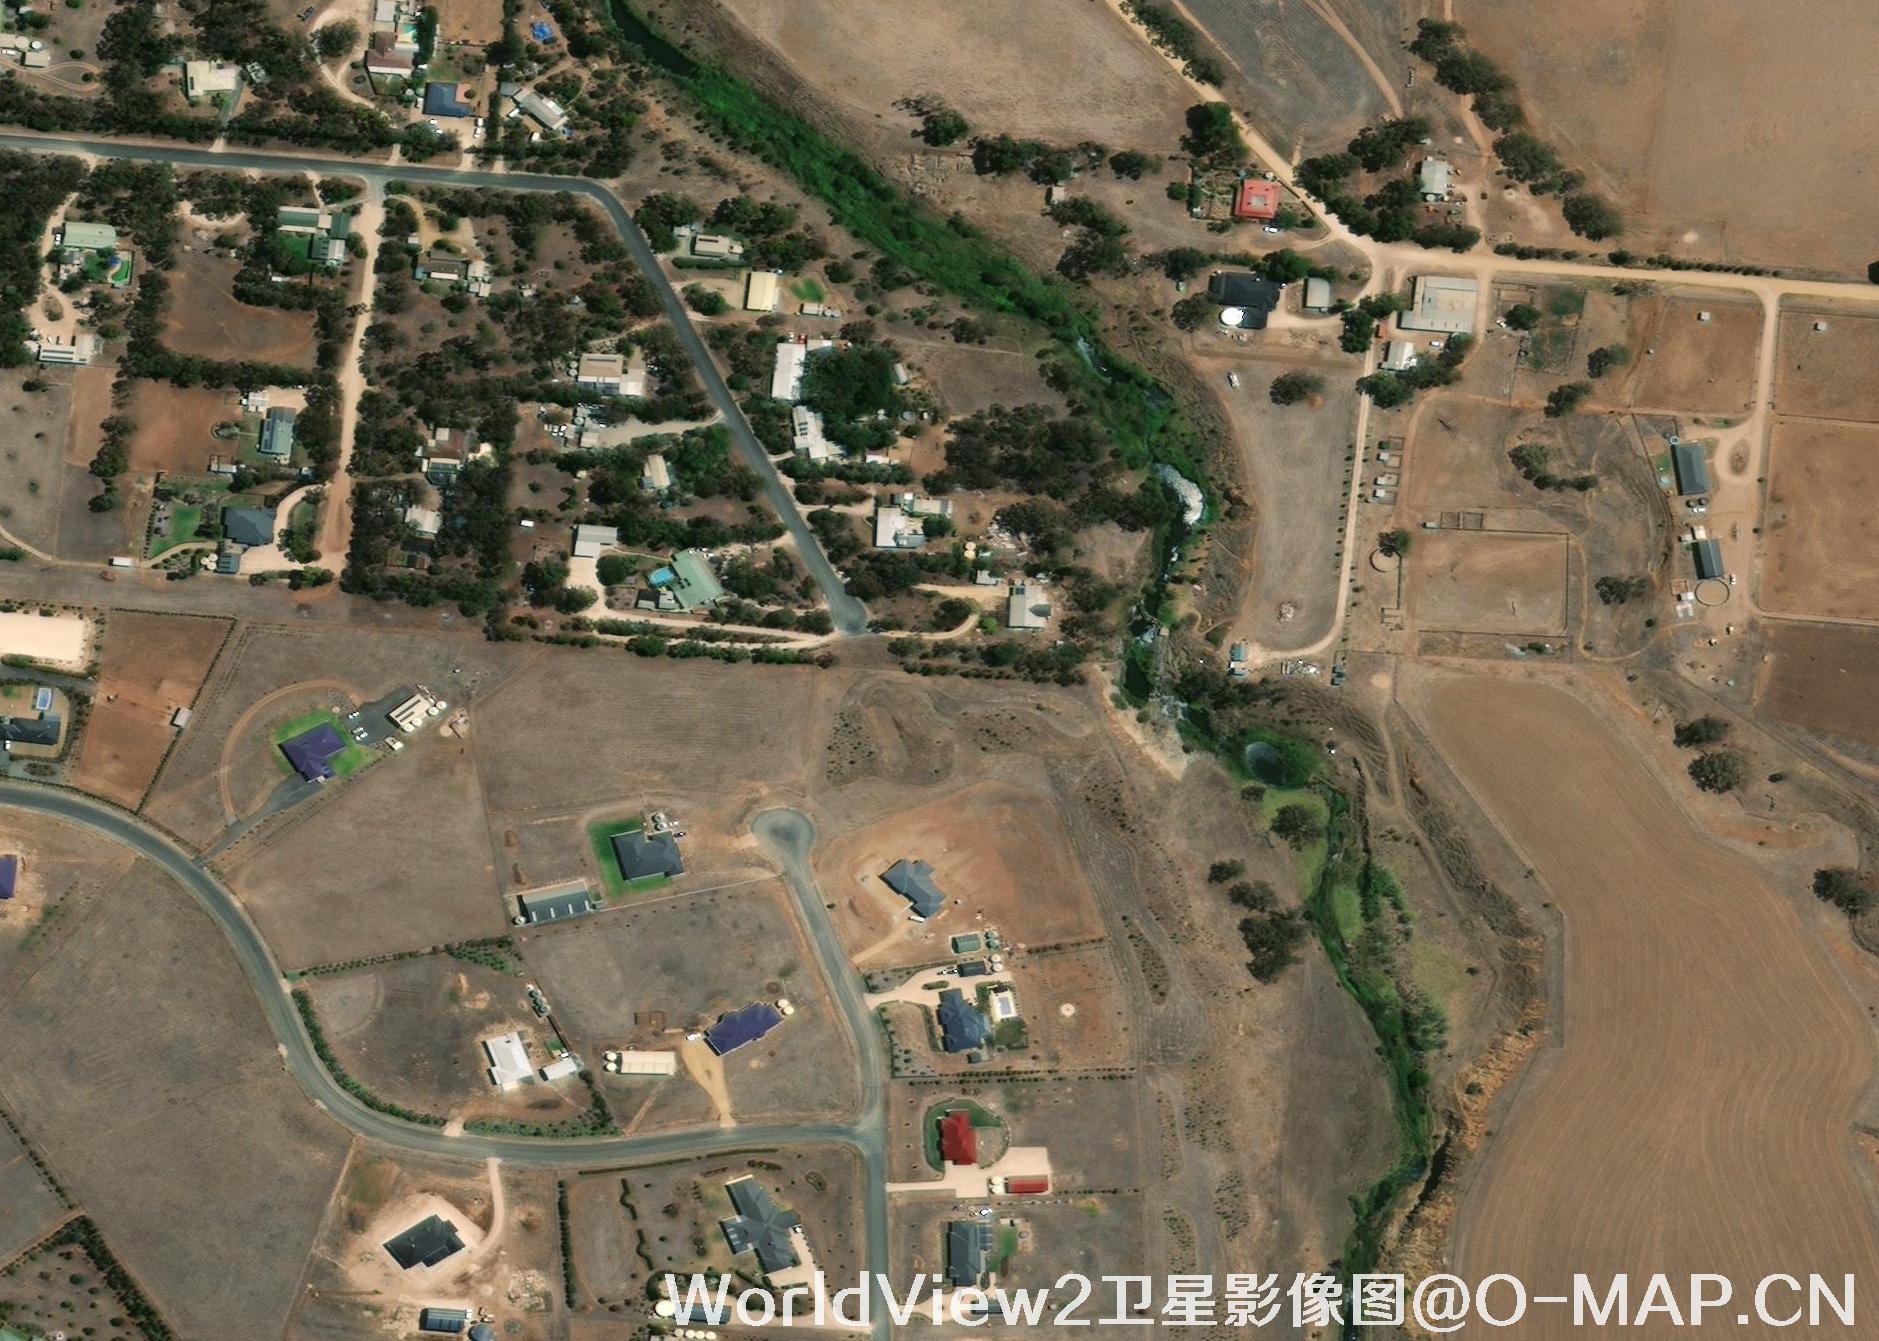 WorldView2卫星拍摄的0.5米分辨率遥感影像图